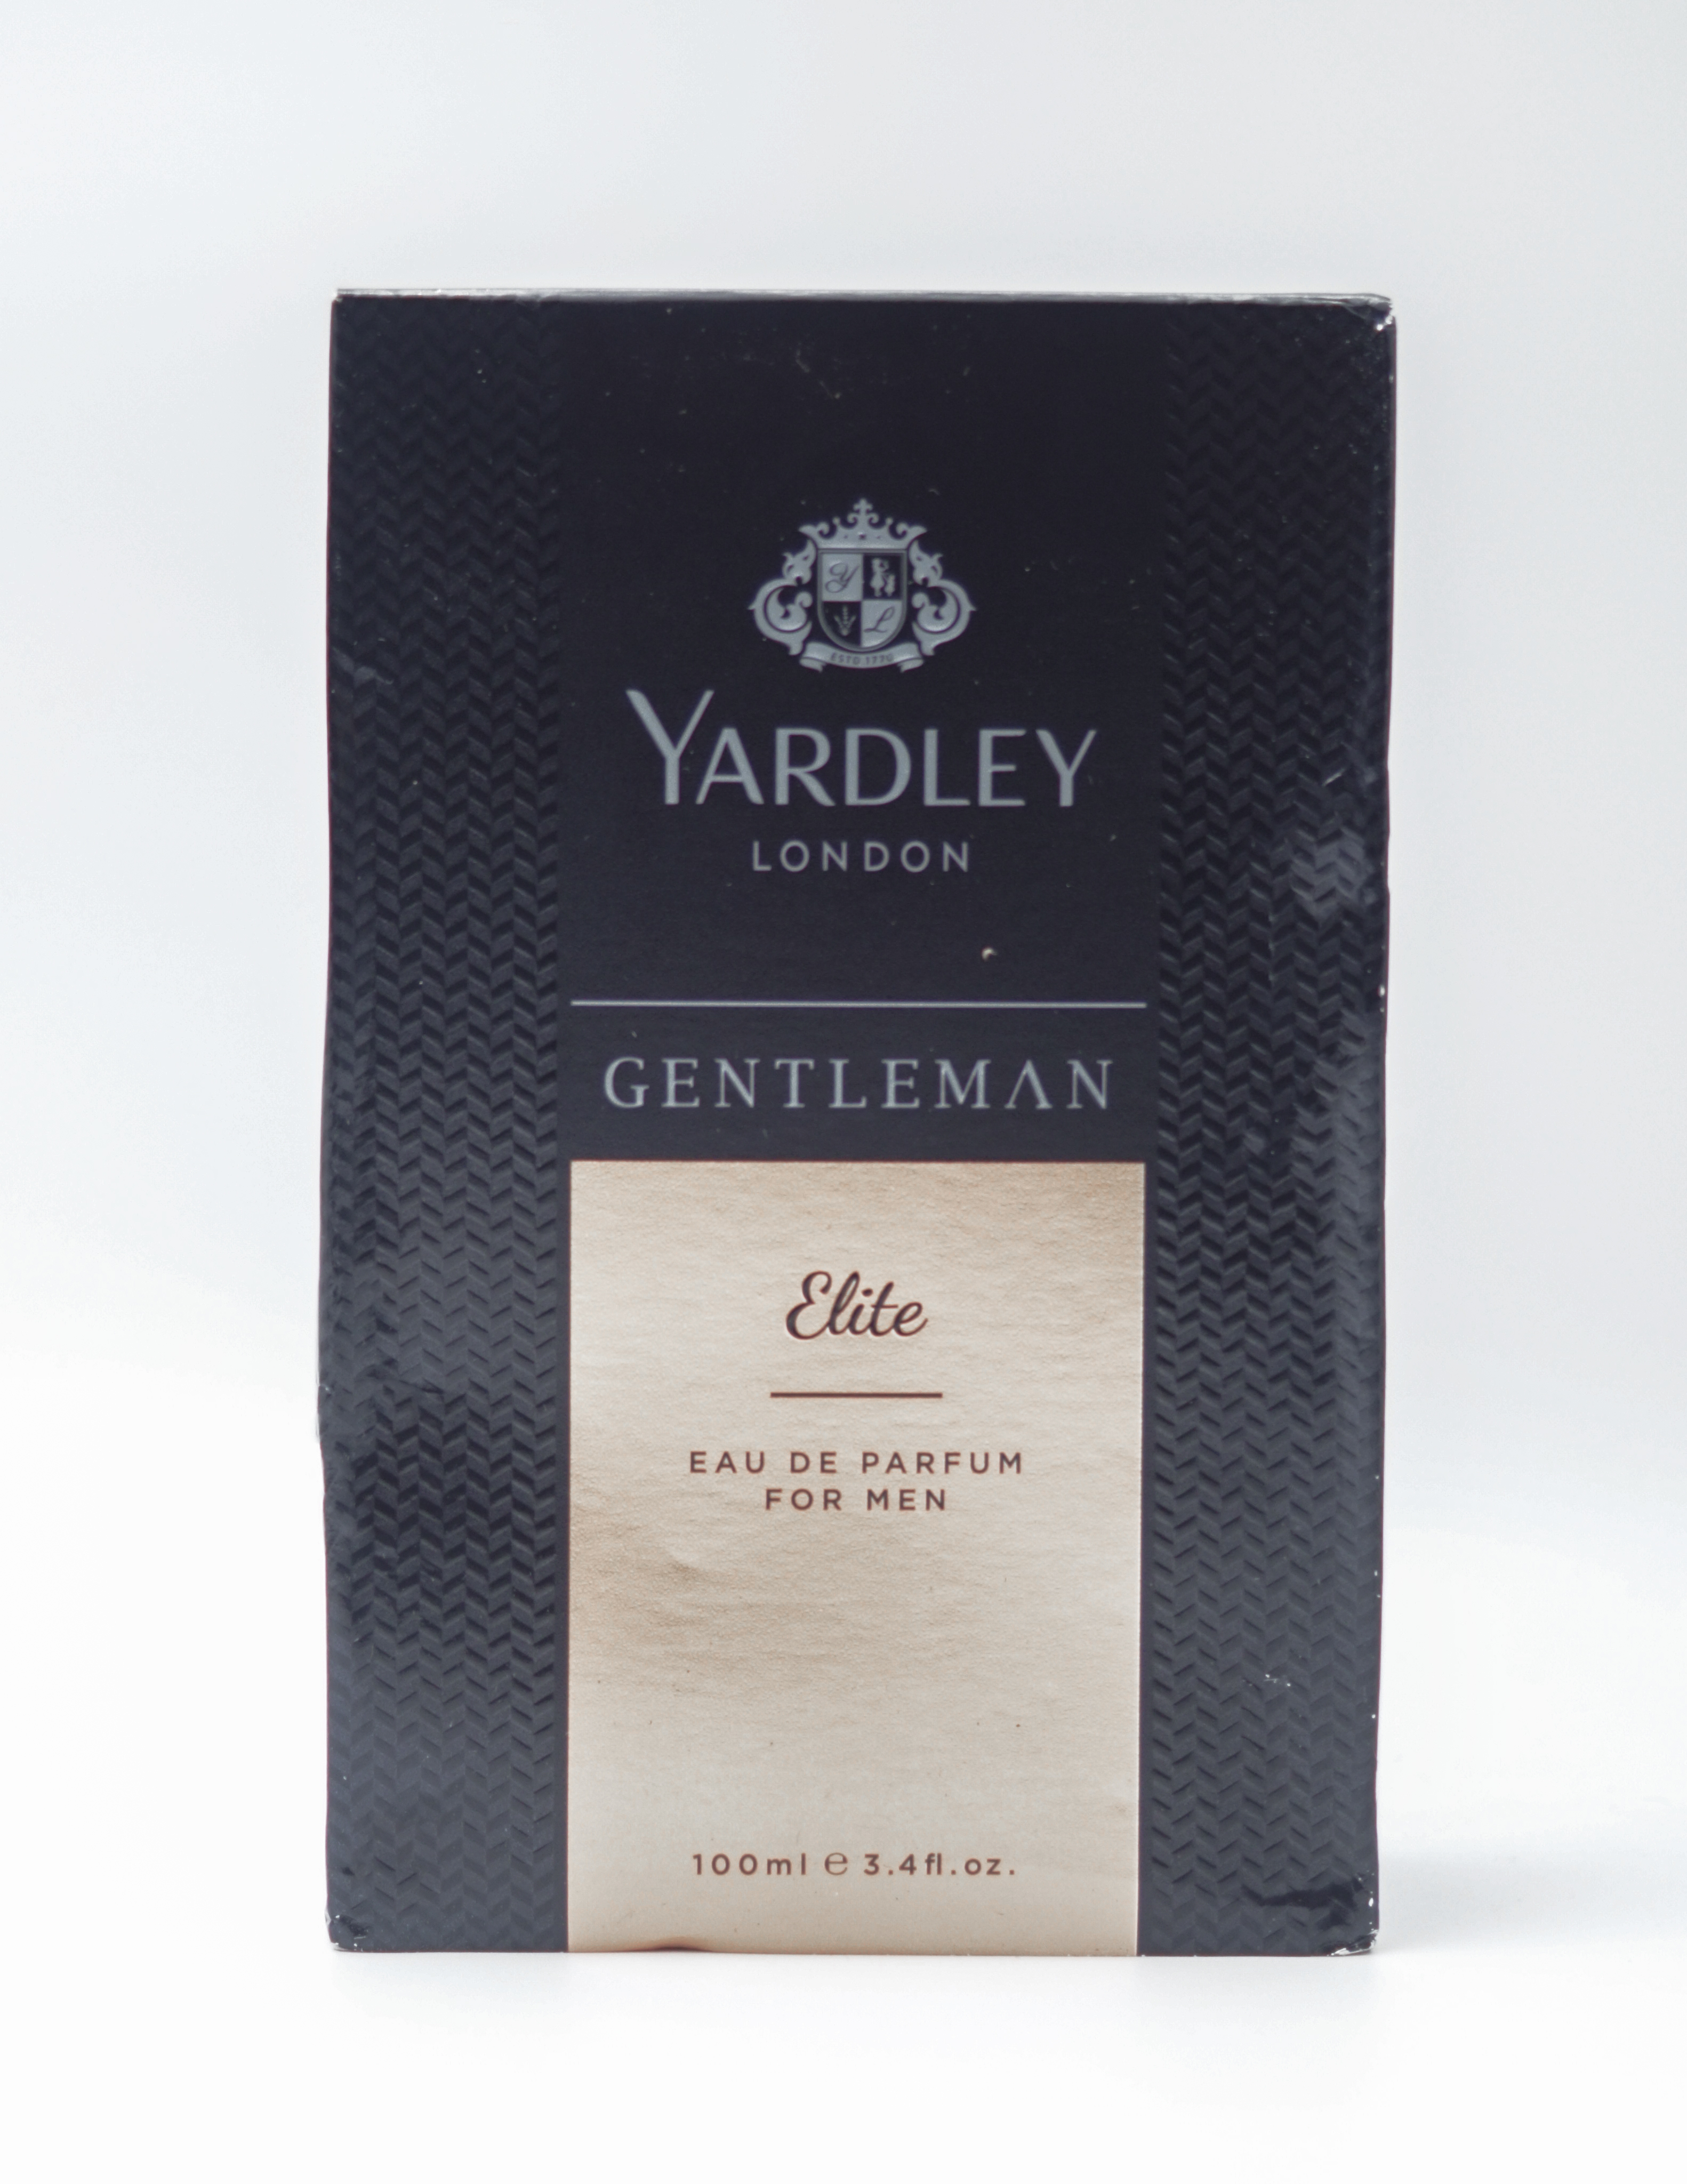 Yardley London Gentleman 100 ml Eau De Toilette Perfume For Men SKU 96838